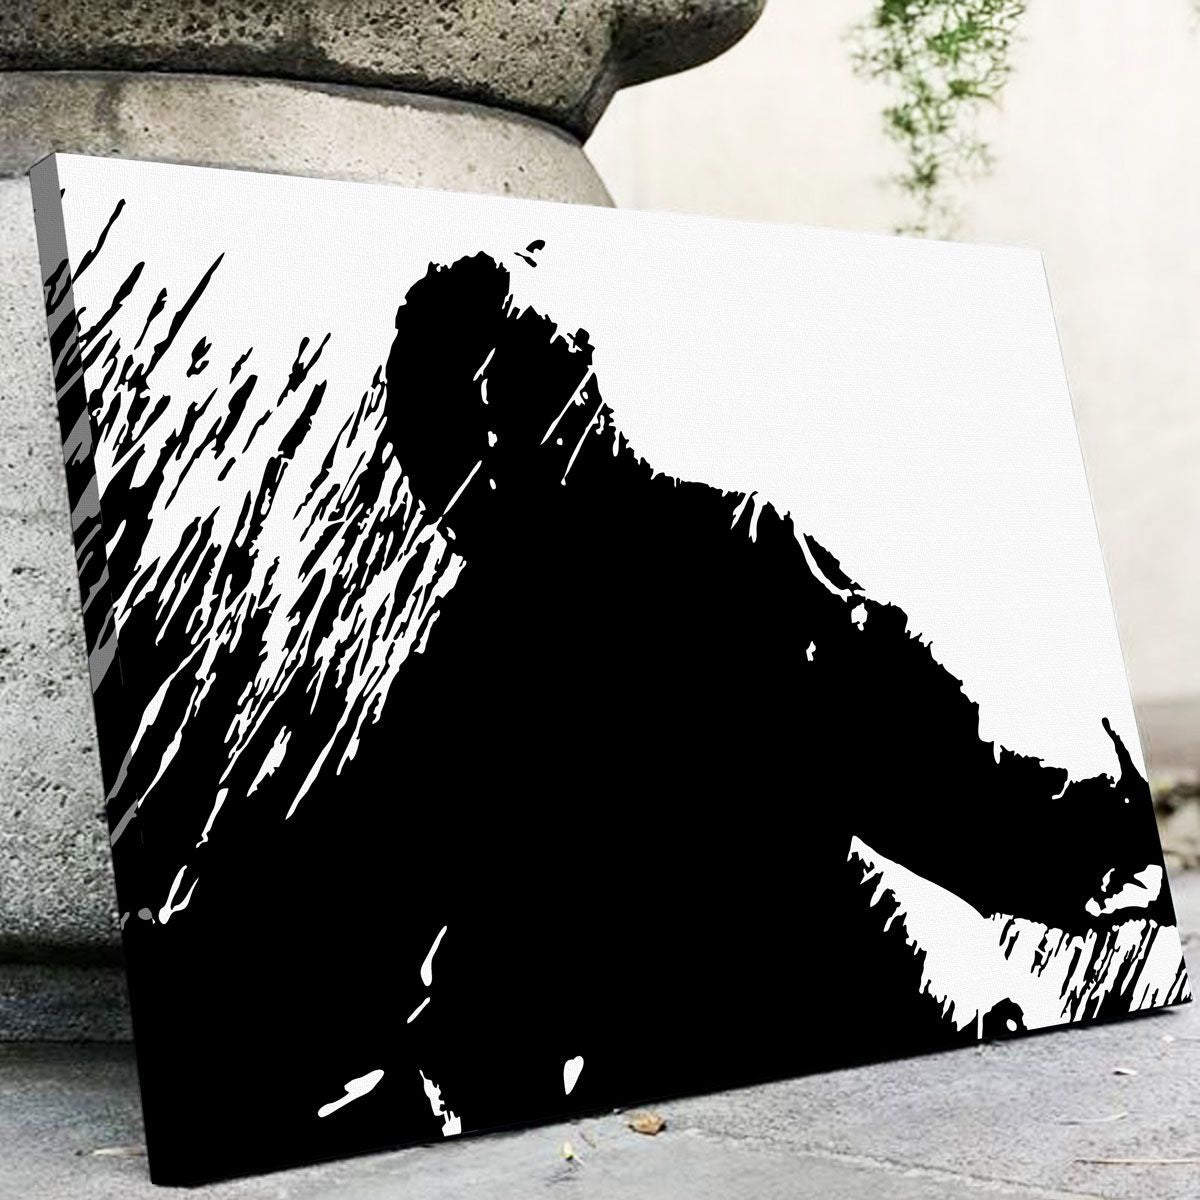 Shawshank Redemption Black and White Canvas Set